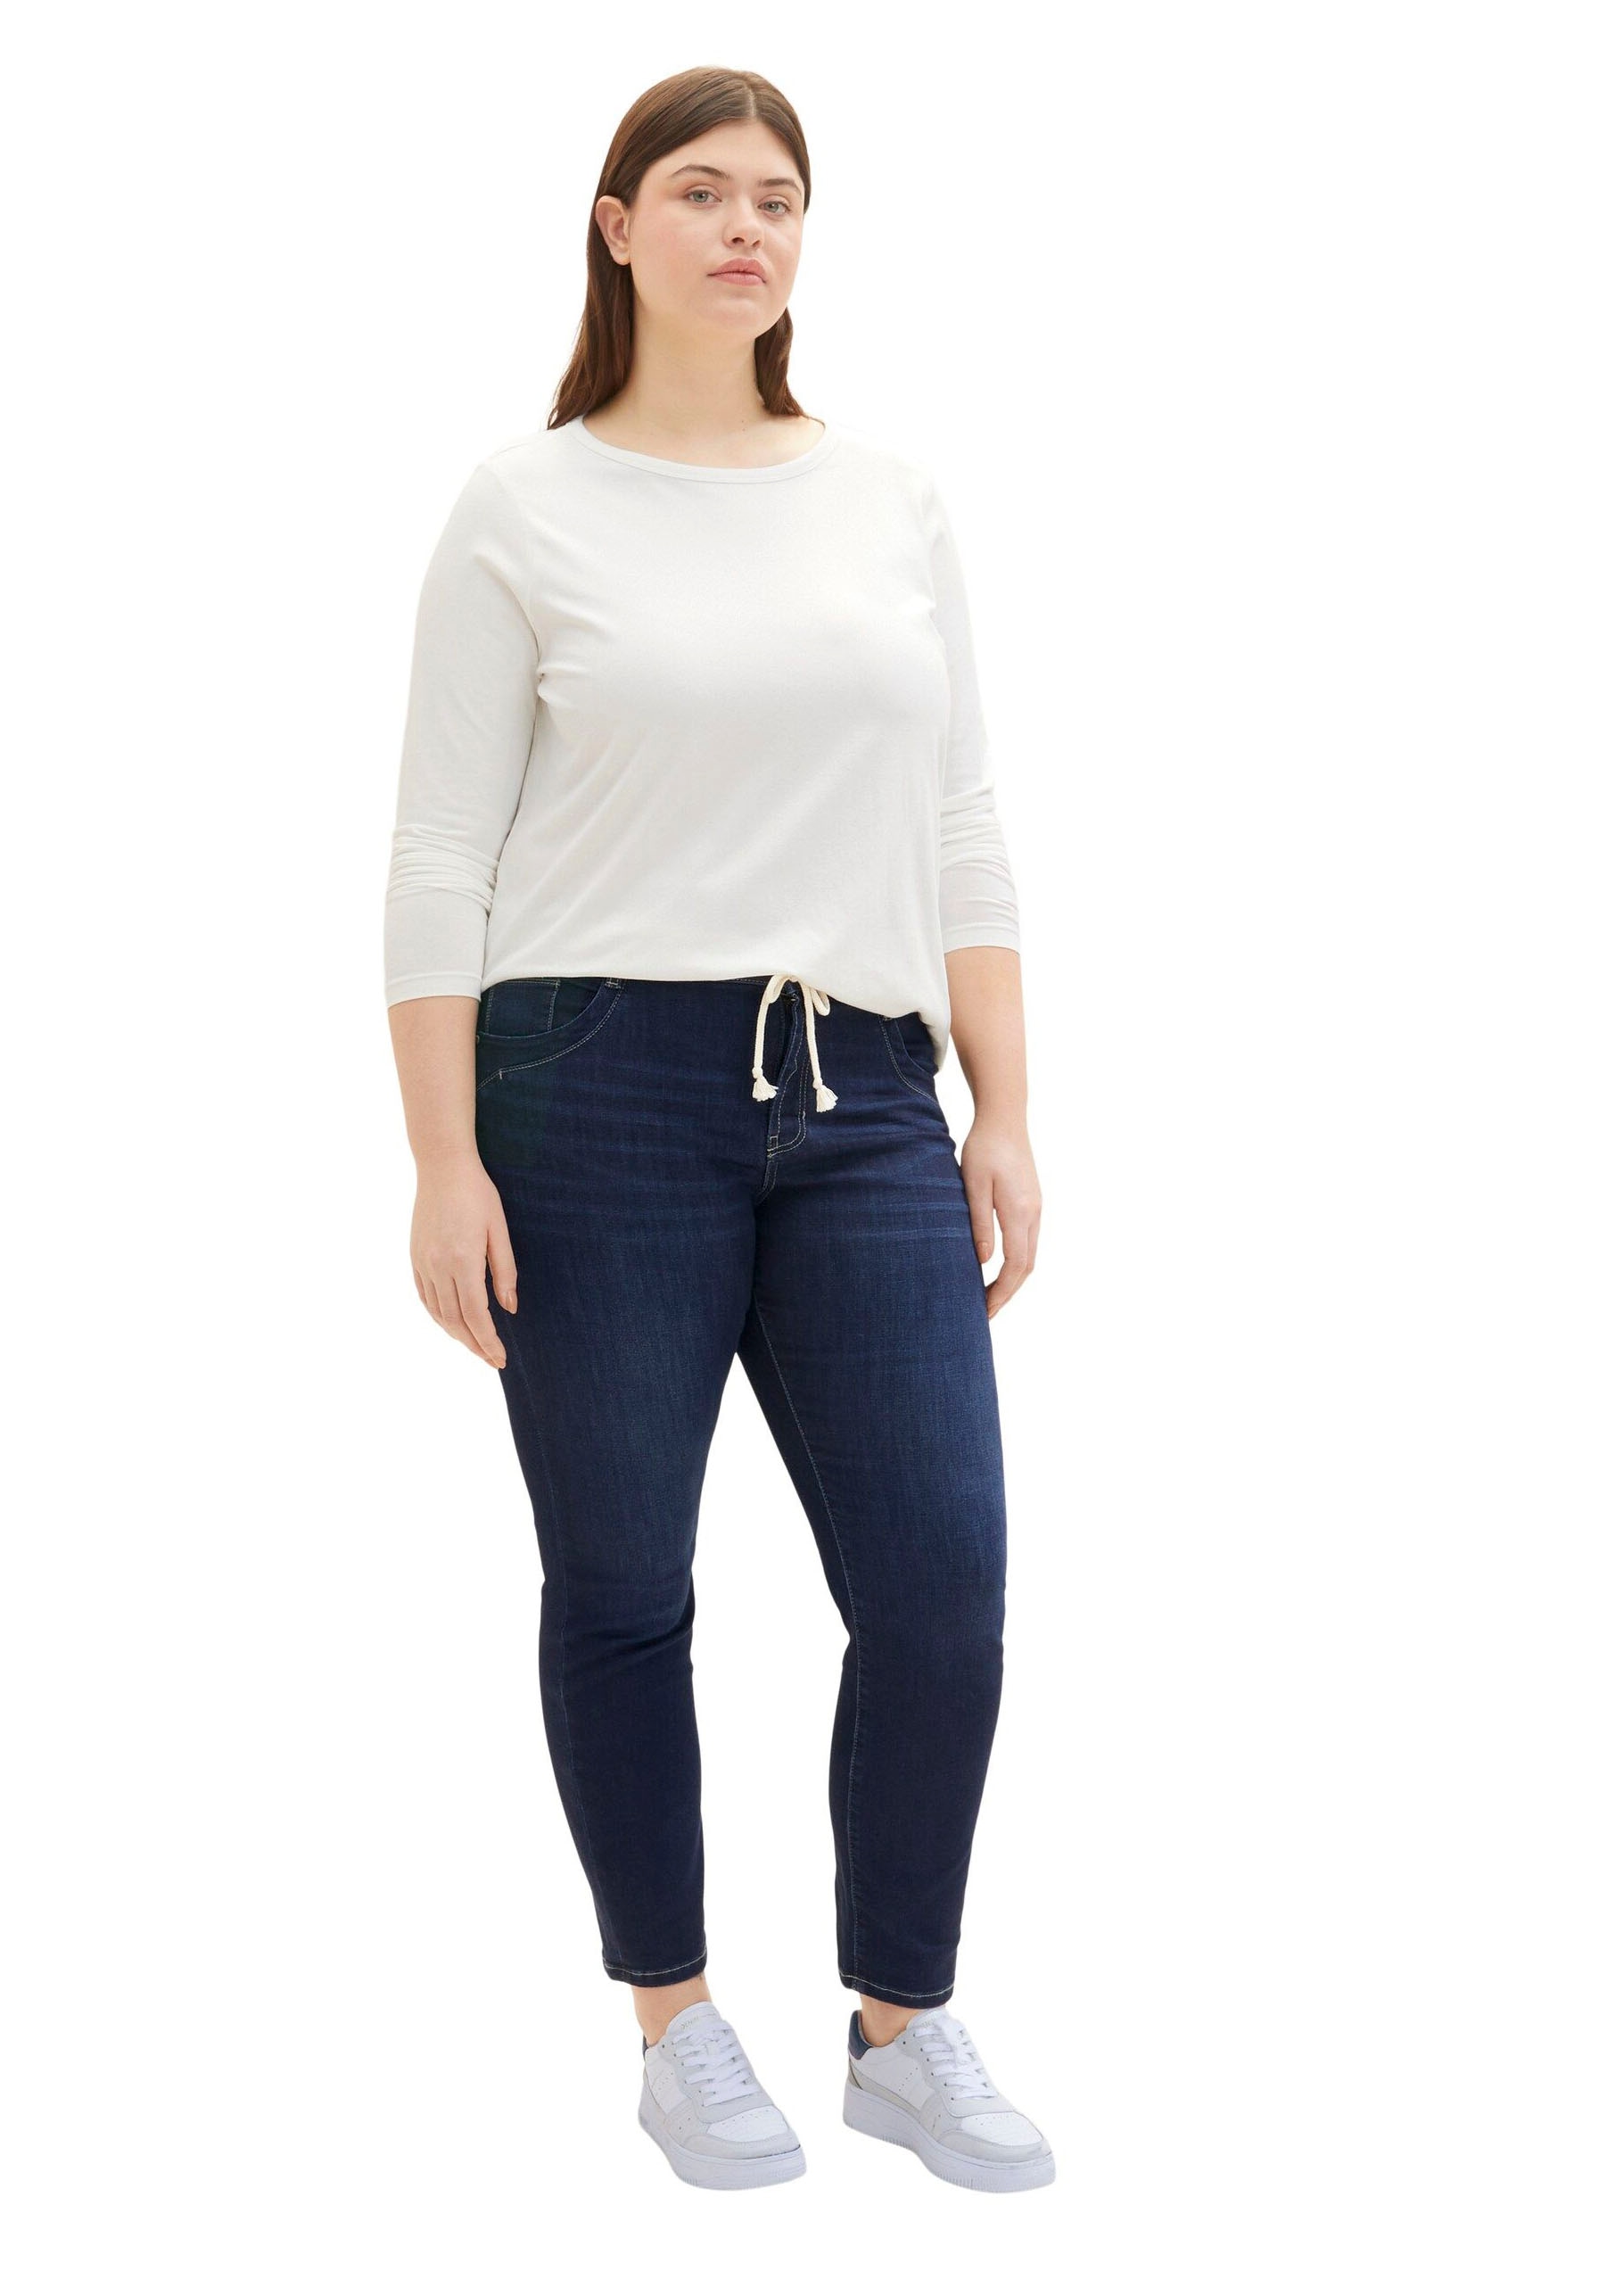 im Five-Pocket-Style Relax-fit-Jeans, PLUS TAILOR für BAUR kaufen | TOM